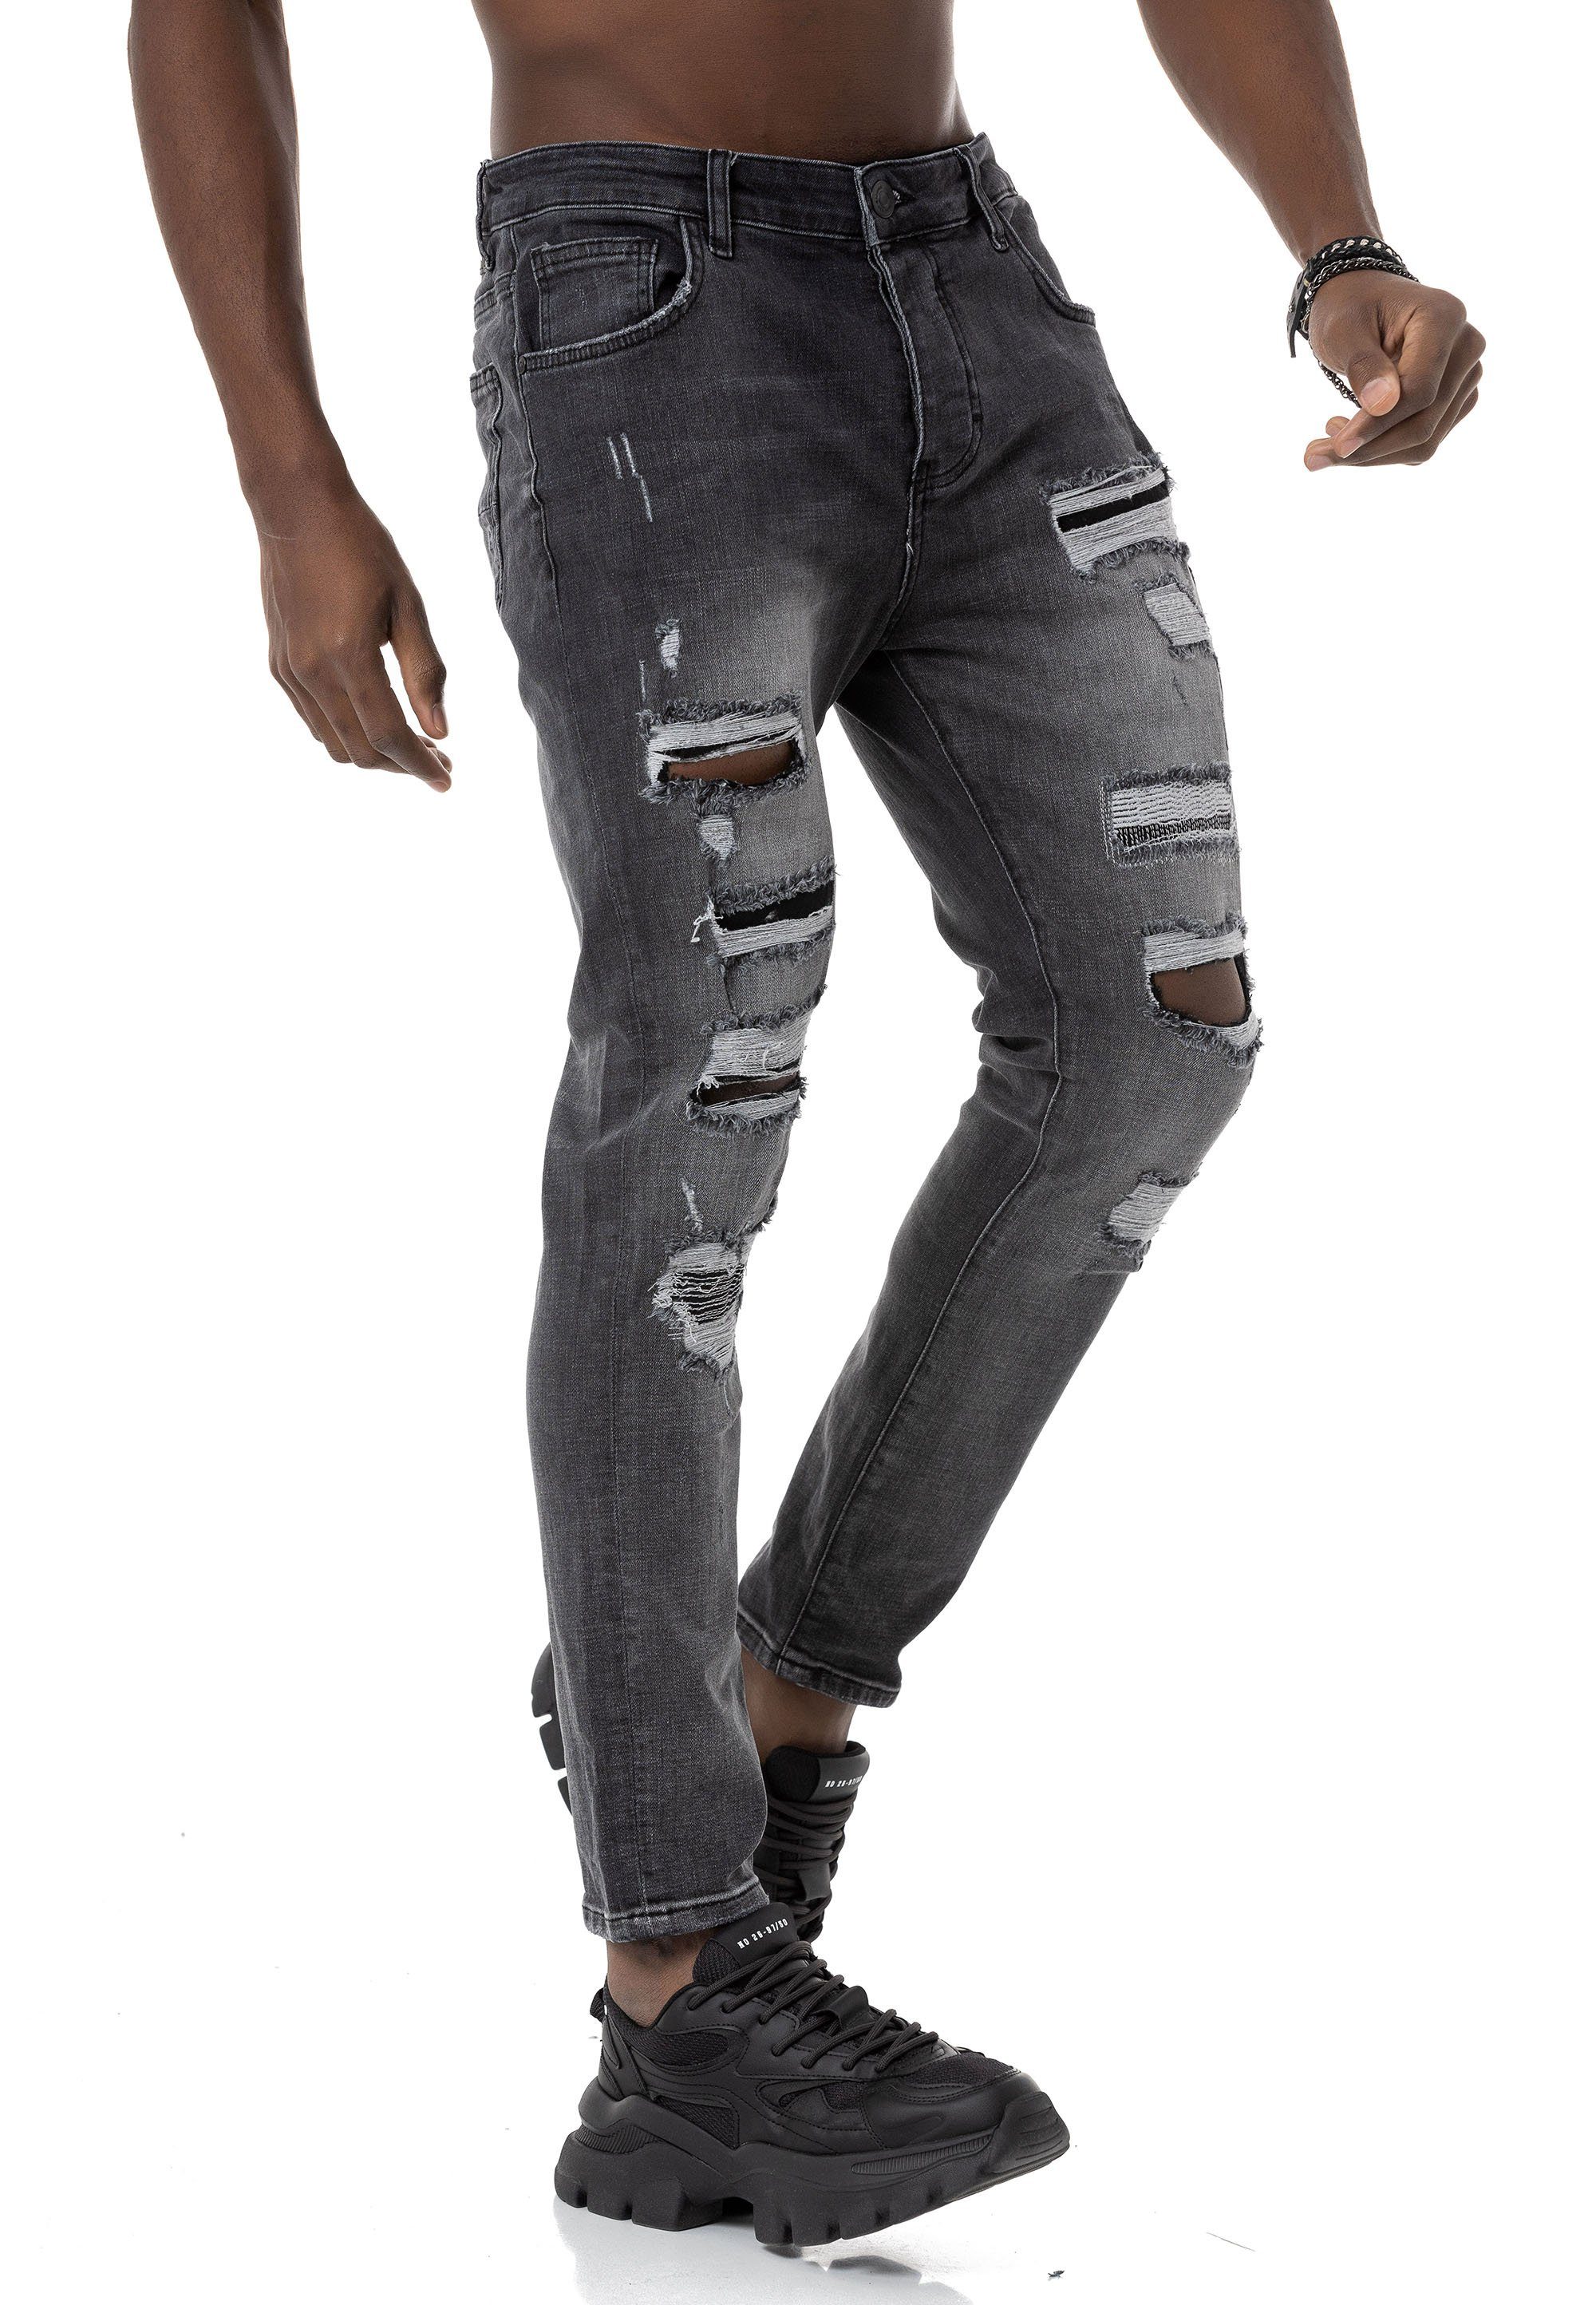 RedBridge Destroyed-Jeans lässige Denim Hose 5-Pocket-Style Anthracite